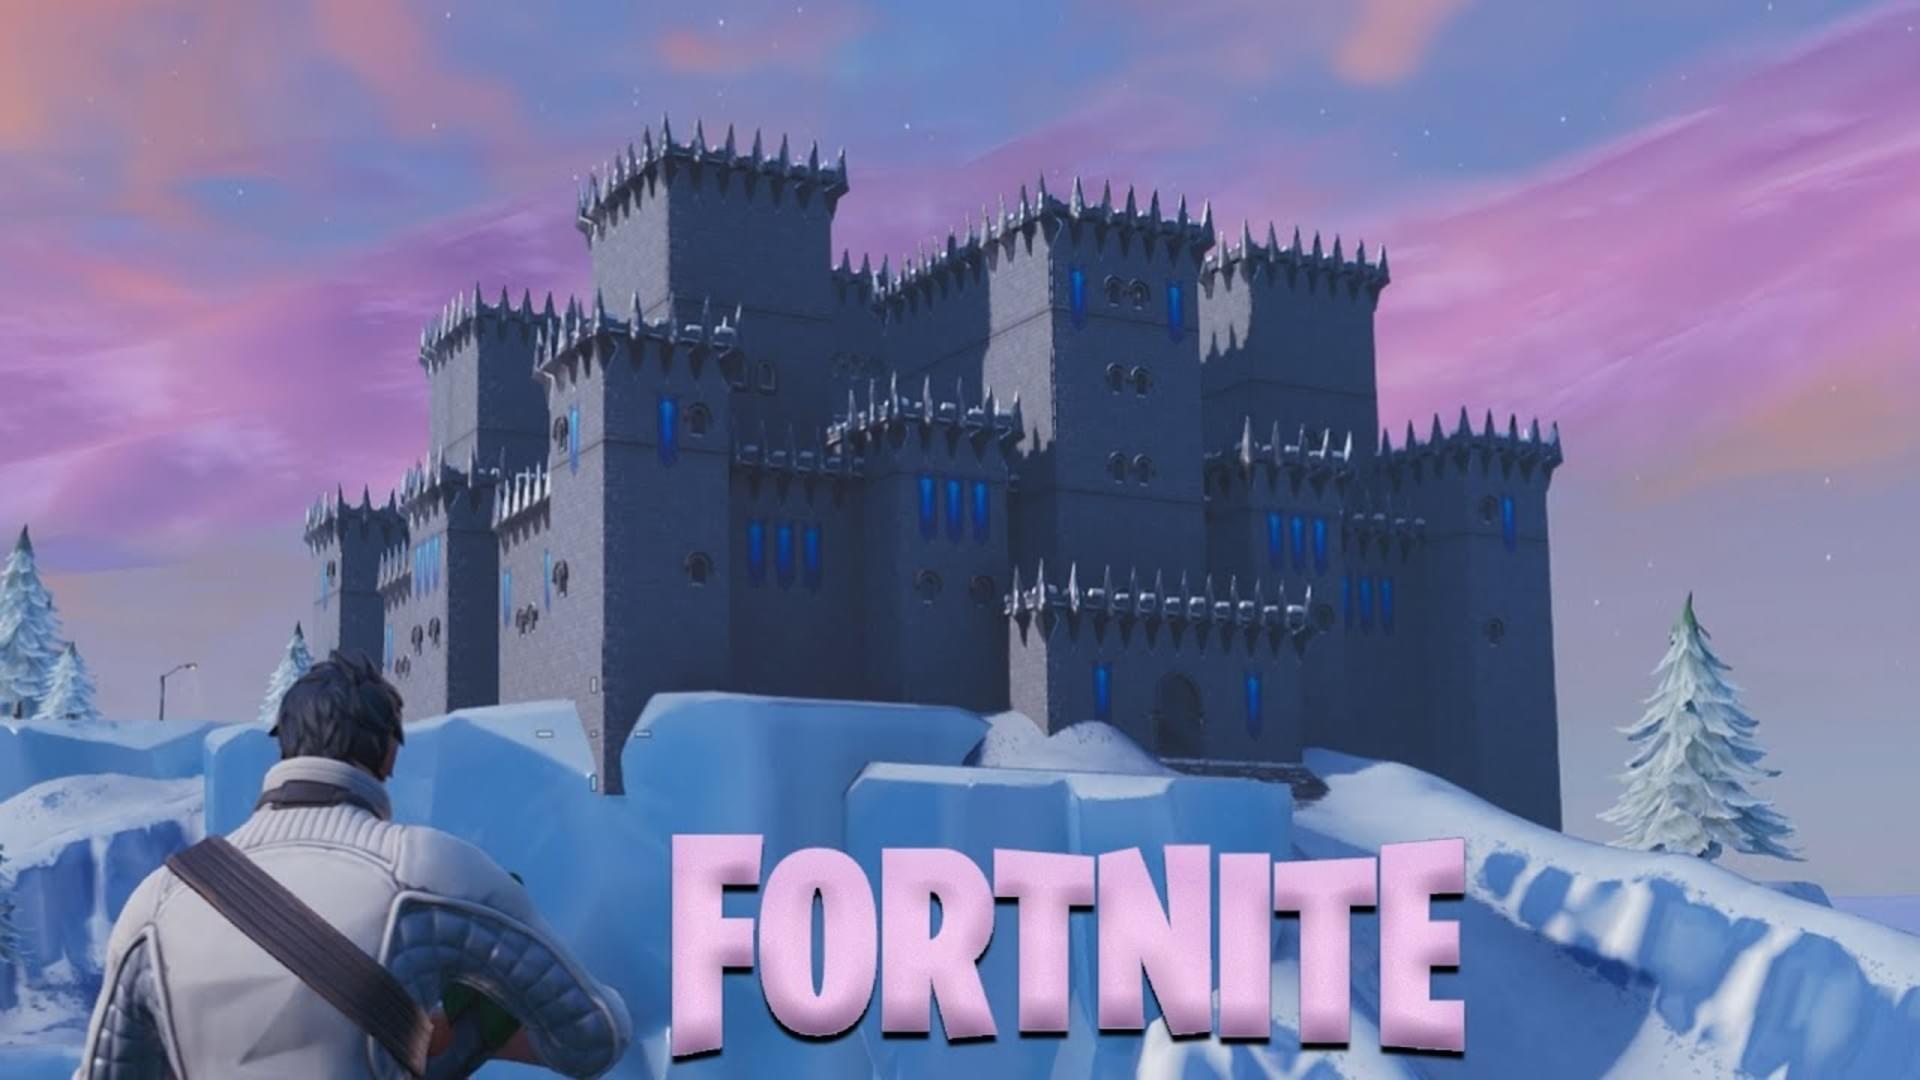 Fortnite Creative Deathmatch Castle Frozen By Ego Hapec - deathmatch castle frozen